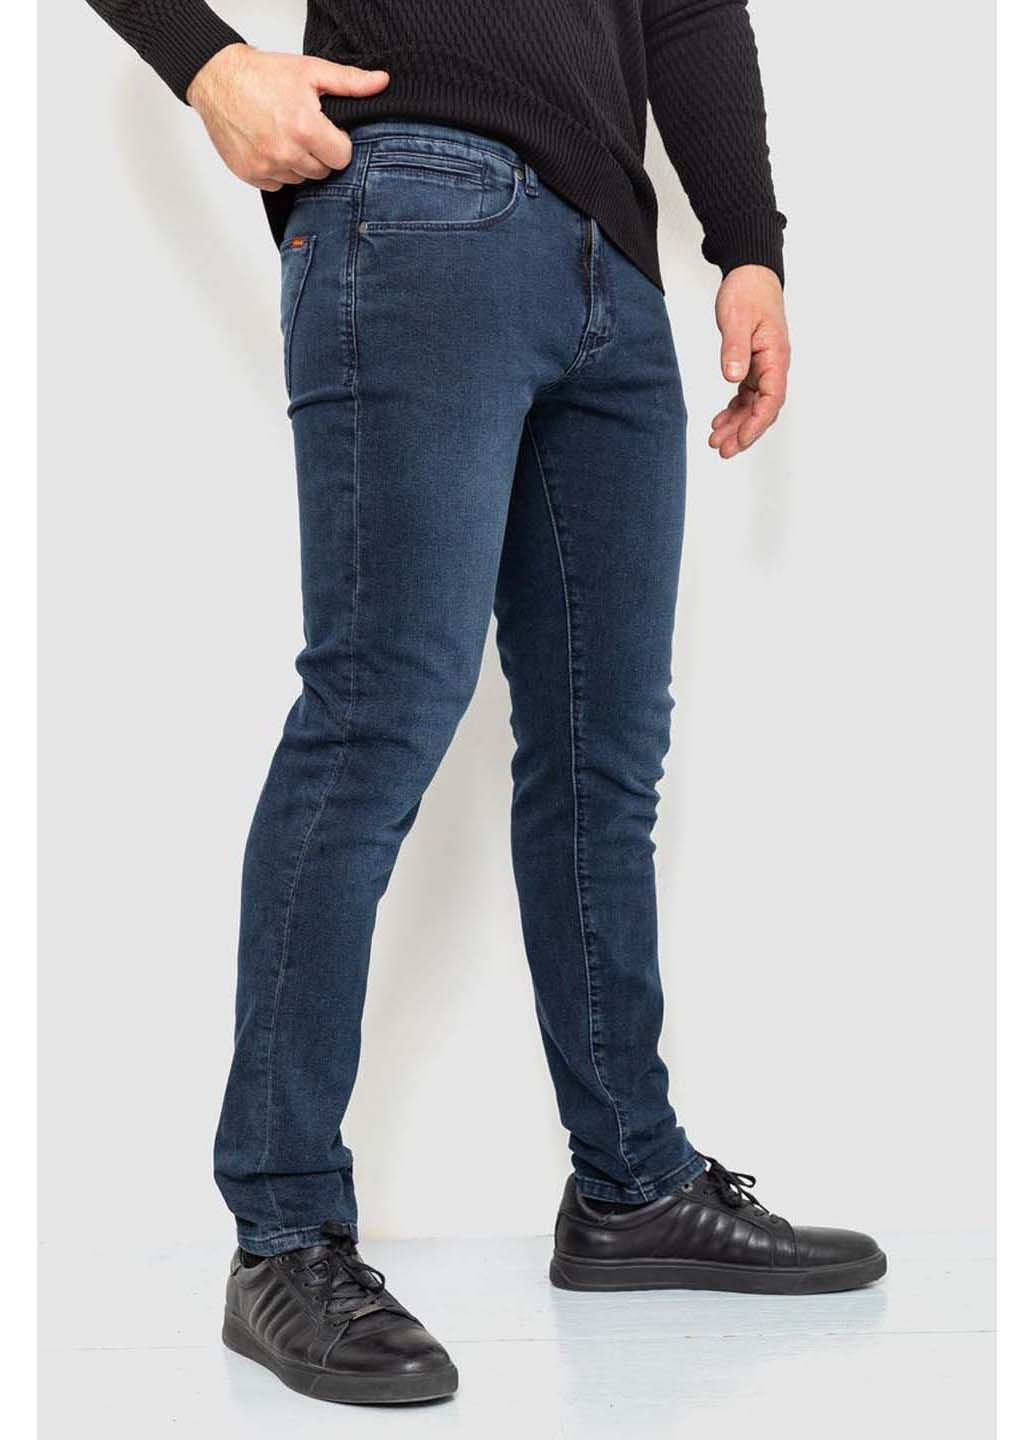 Темно-синие демисезонные джинсы Amitex